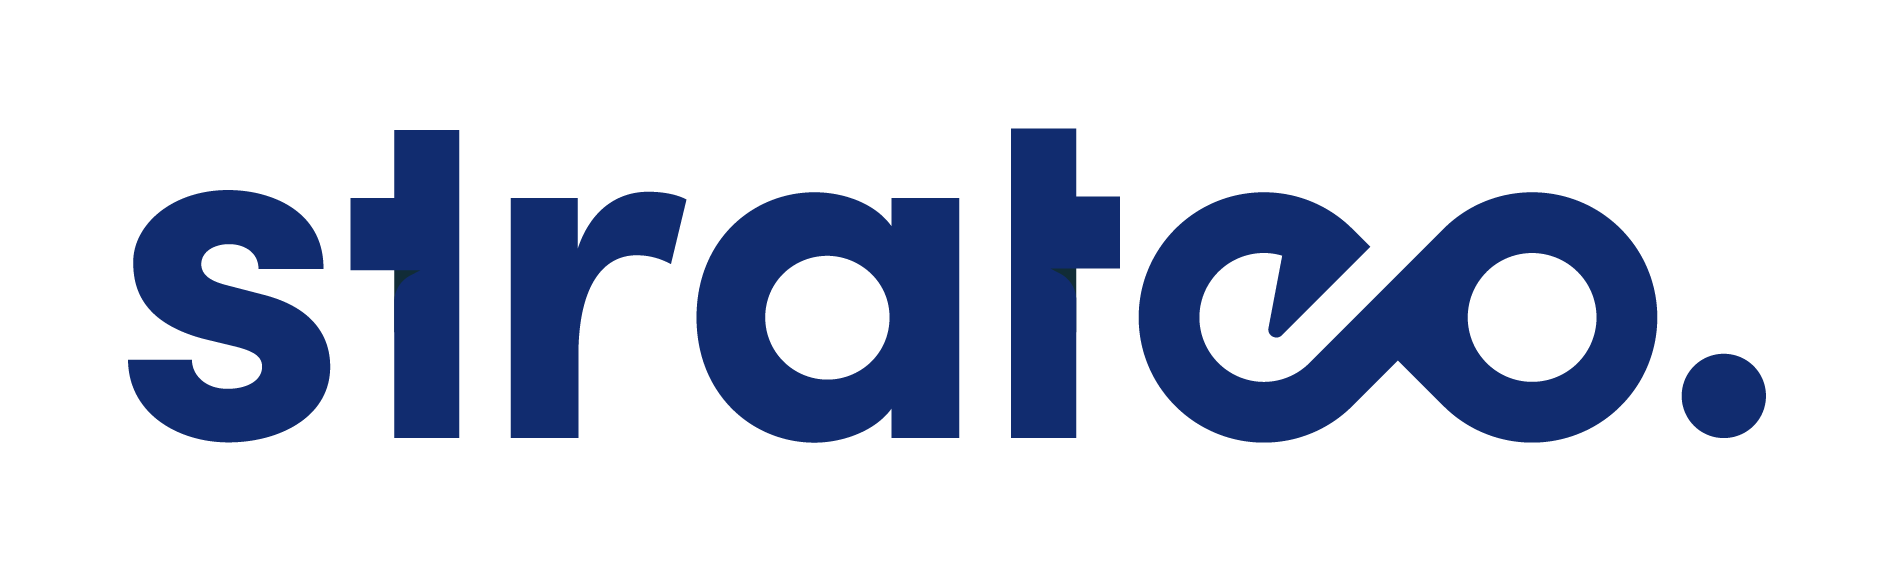 Logog Strateo complet - Expert marketing numérique